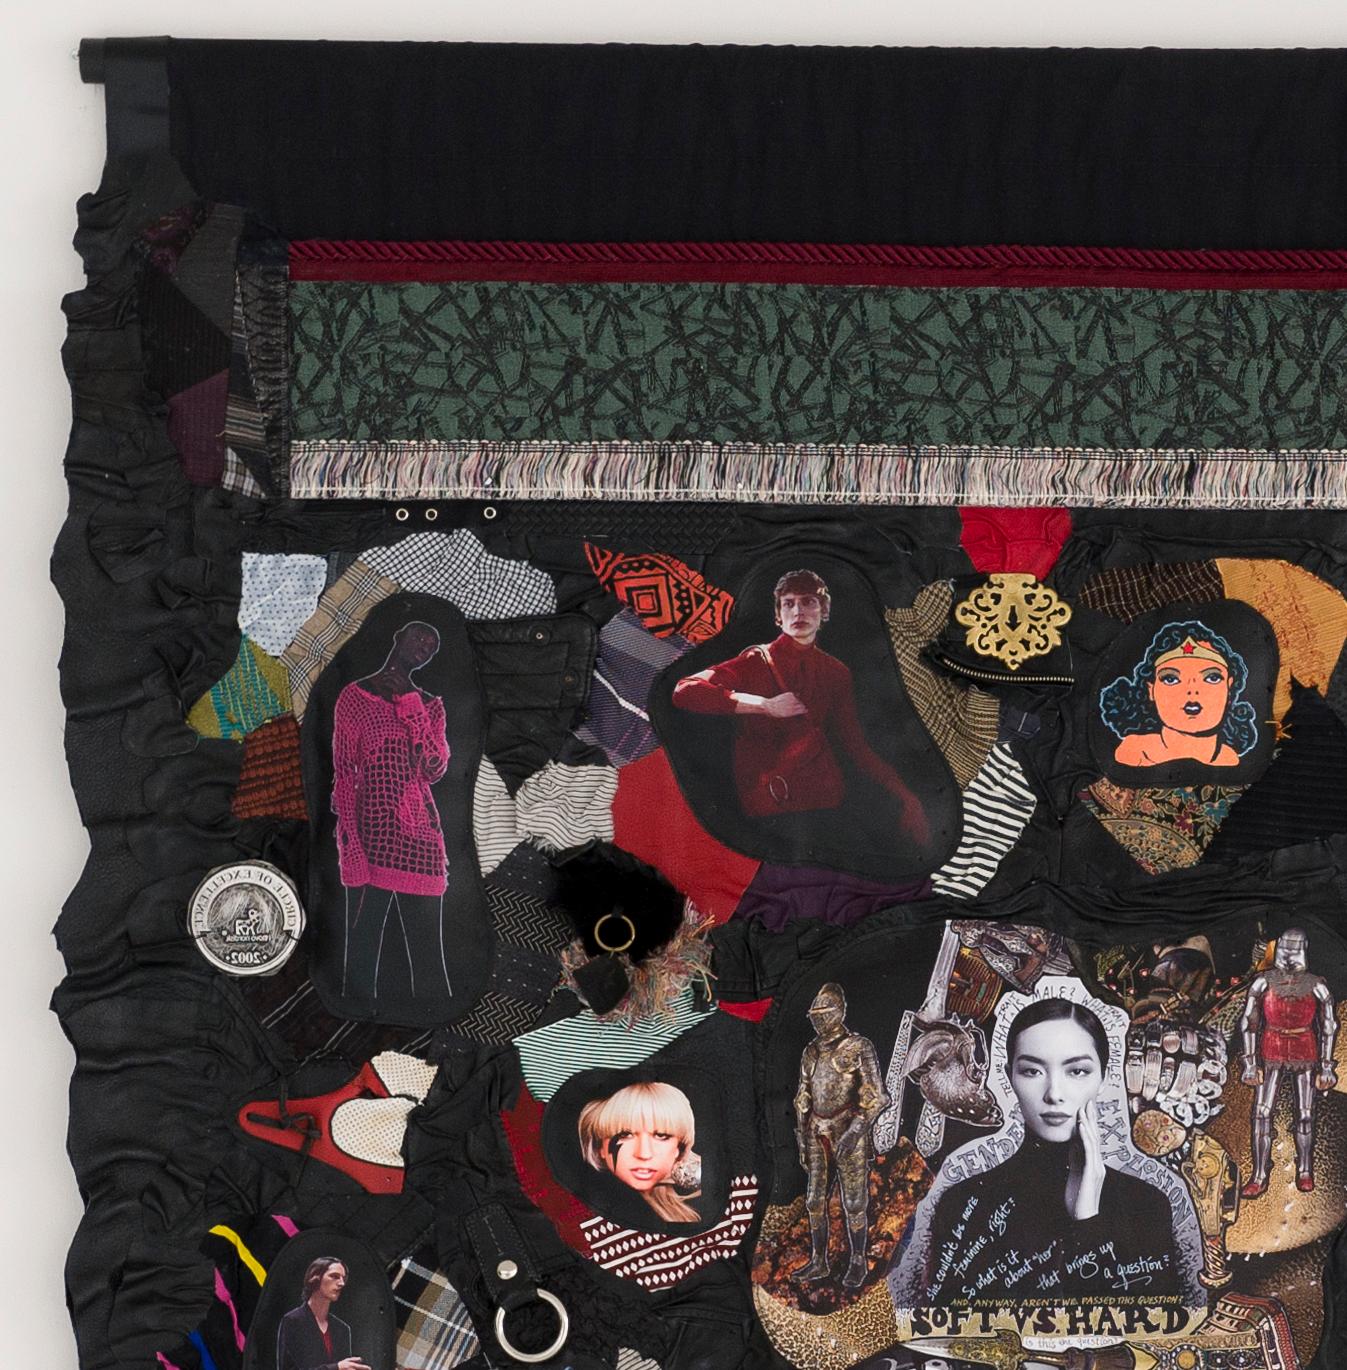 Feministische Contemporary Sculptural Tapestry - Maskulinitäten: Weich vs. Stark 860 (Feministische Kunst), Mixed Media Art, von Linda Stein